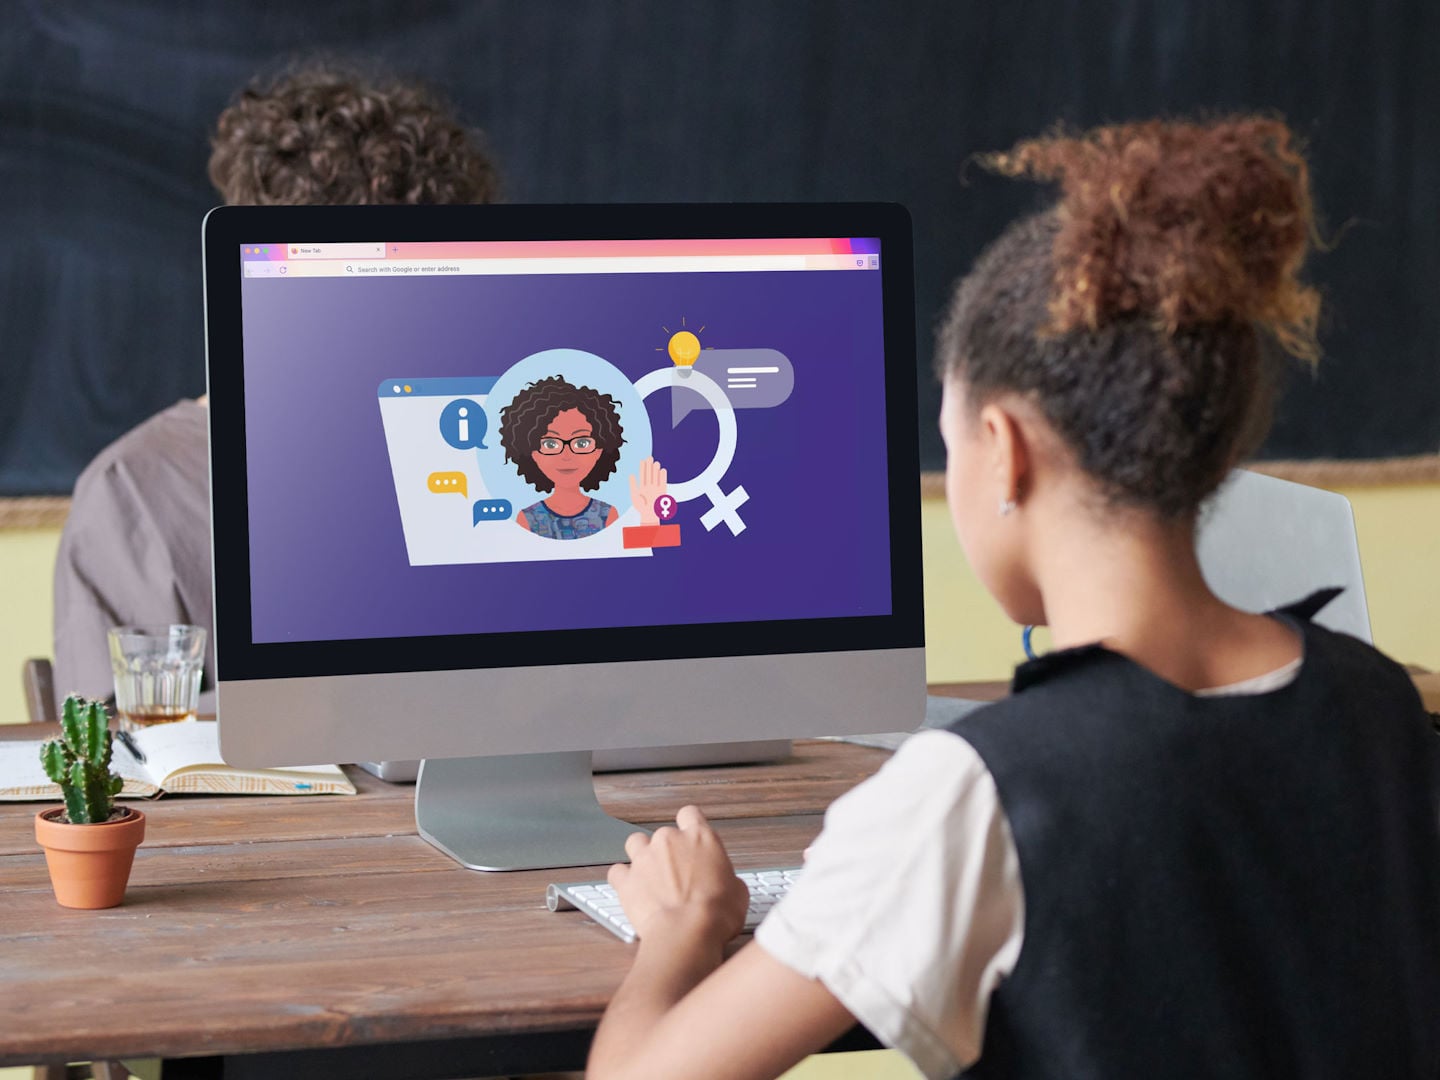 Una joven está delante de una pantalla de computadora en la que aparece el avatar de otra mujer invitándola a una discusión.